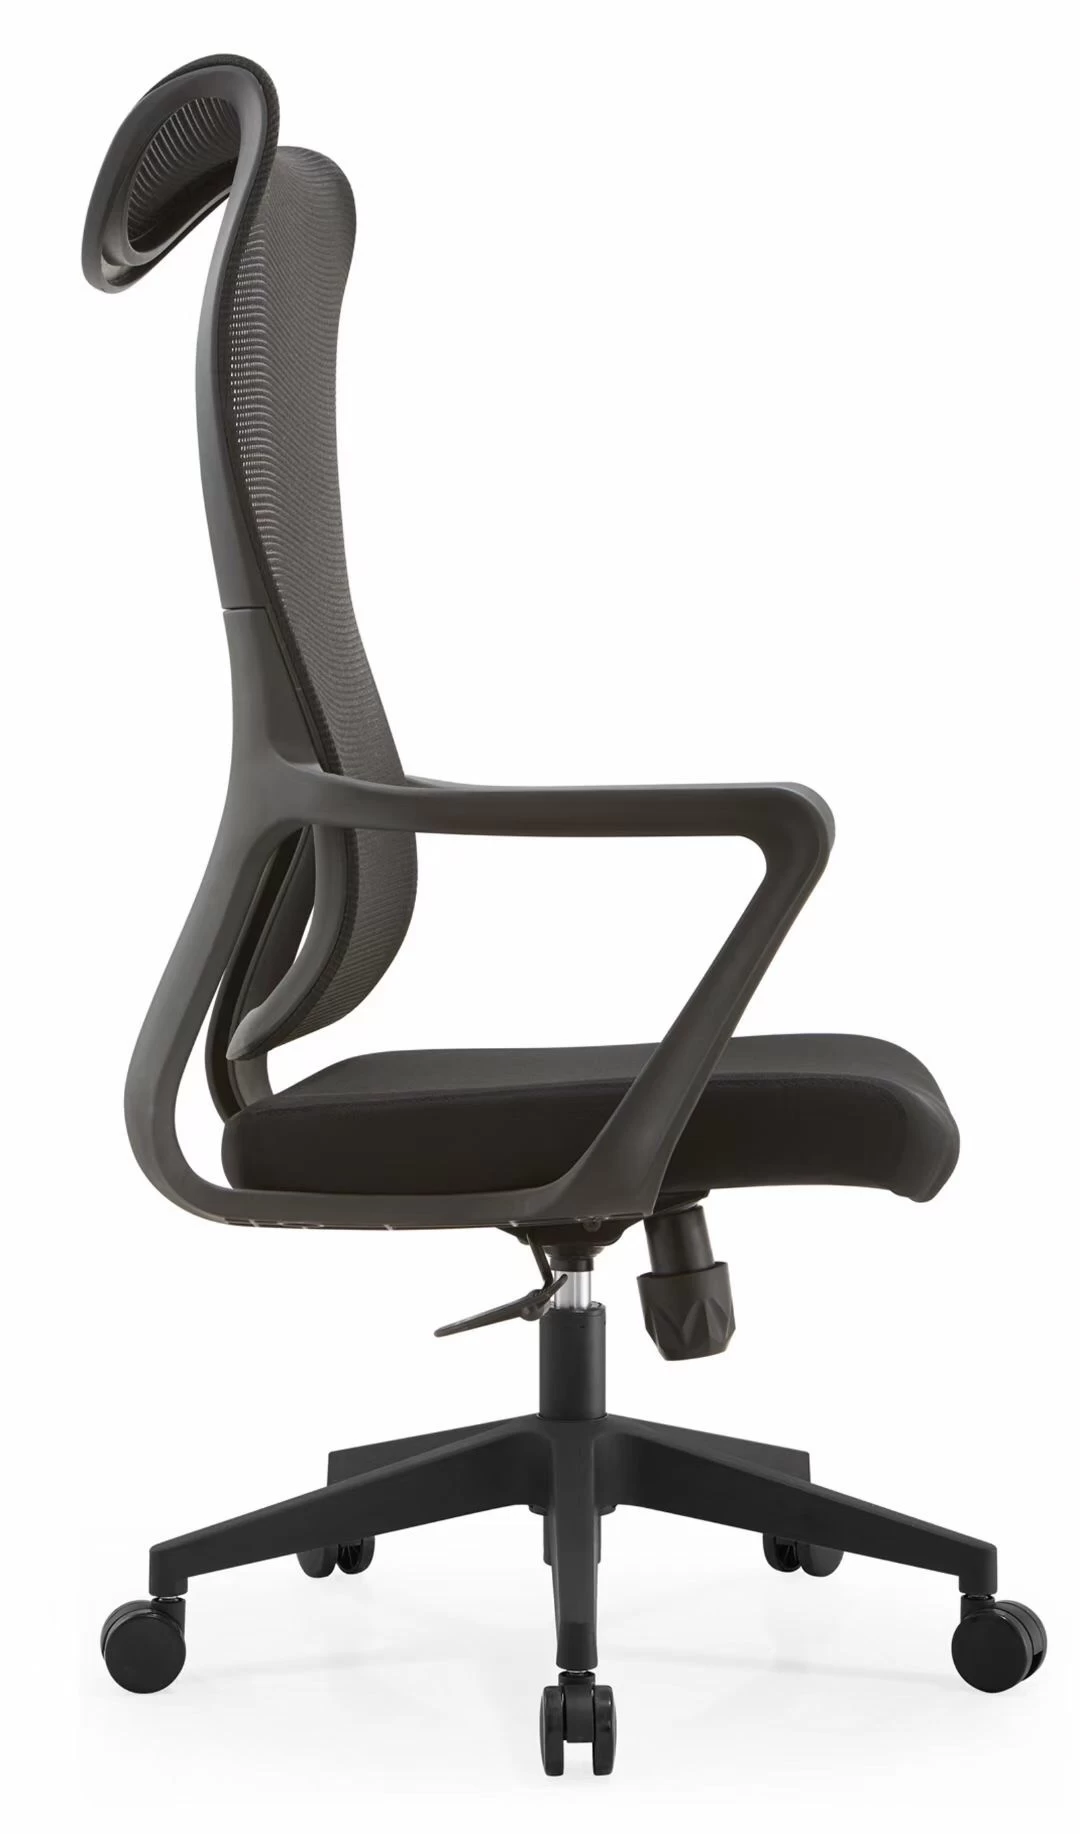 Newcity N1606优雅精致网椅圆润线条和中性风格彰显更丰富空间格调办公椅中国制造商